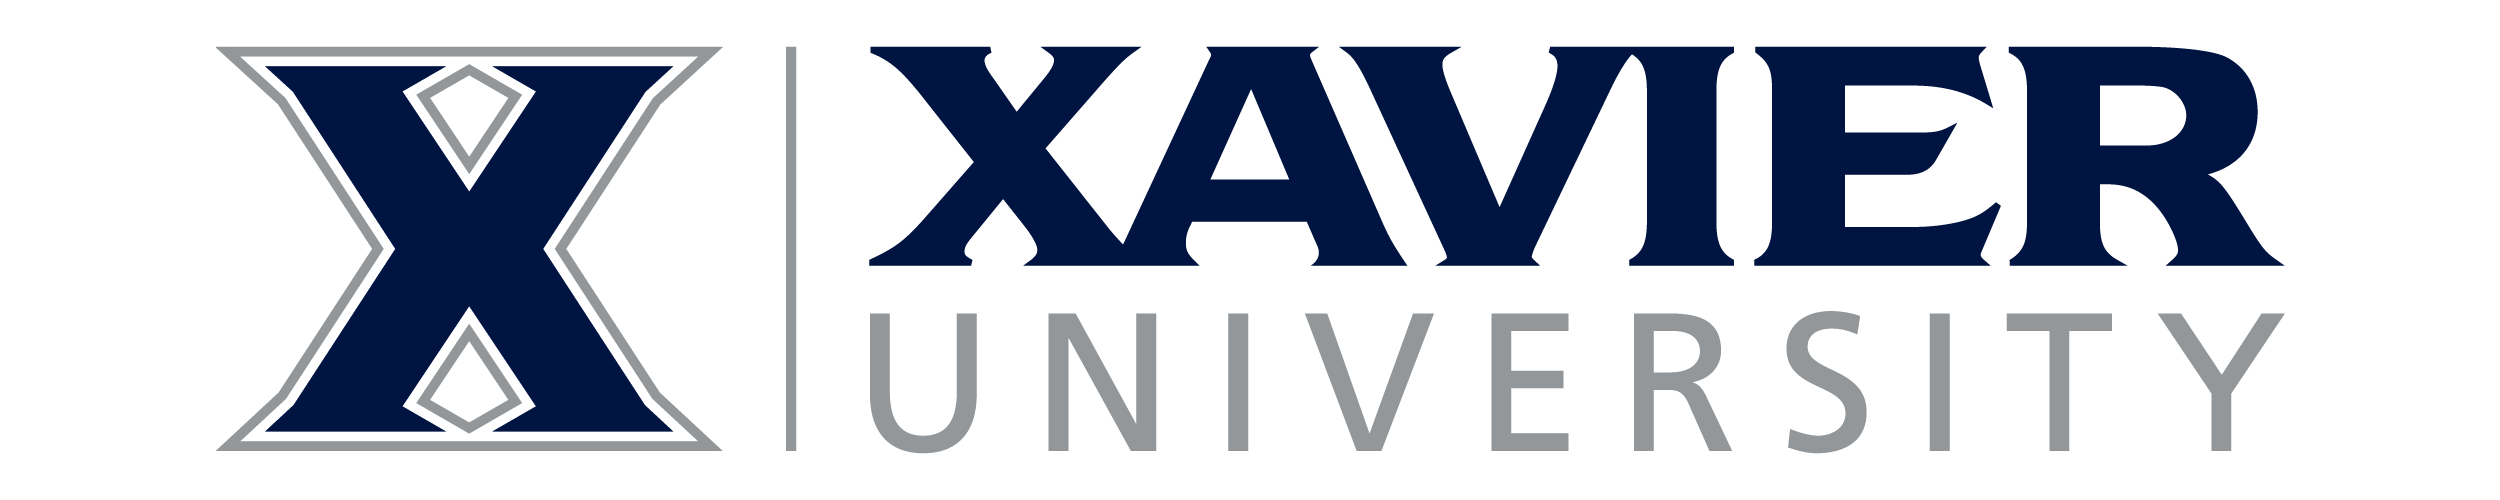 Xavier logo in header